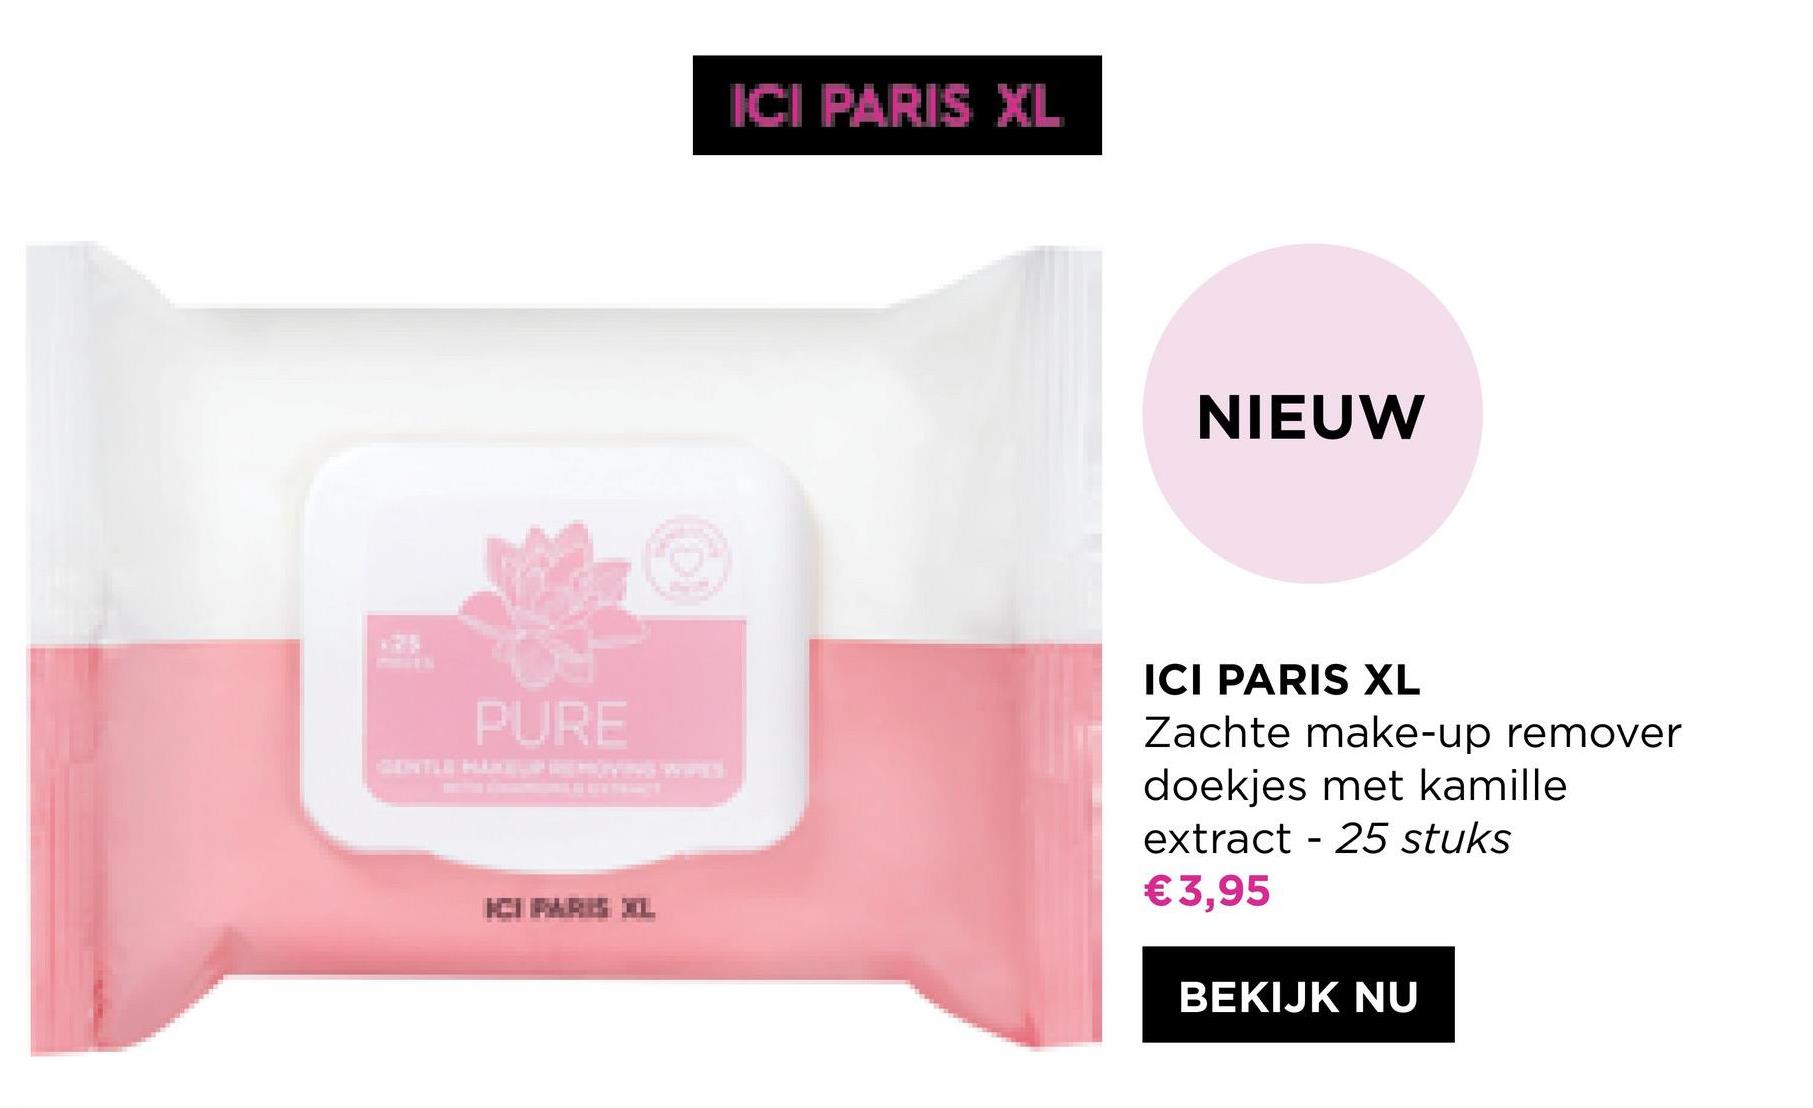 ICI PARIS XL
NIEUW
PURE
ICI PARIS XL
Zachte make-up remover
doekjes met kamille
extract - 25 stuks
€ 3,95
ICIPARE IL
BEKIJK NU
